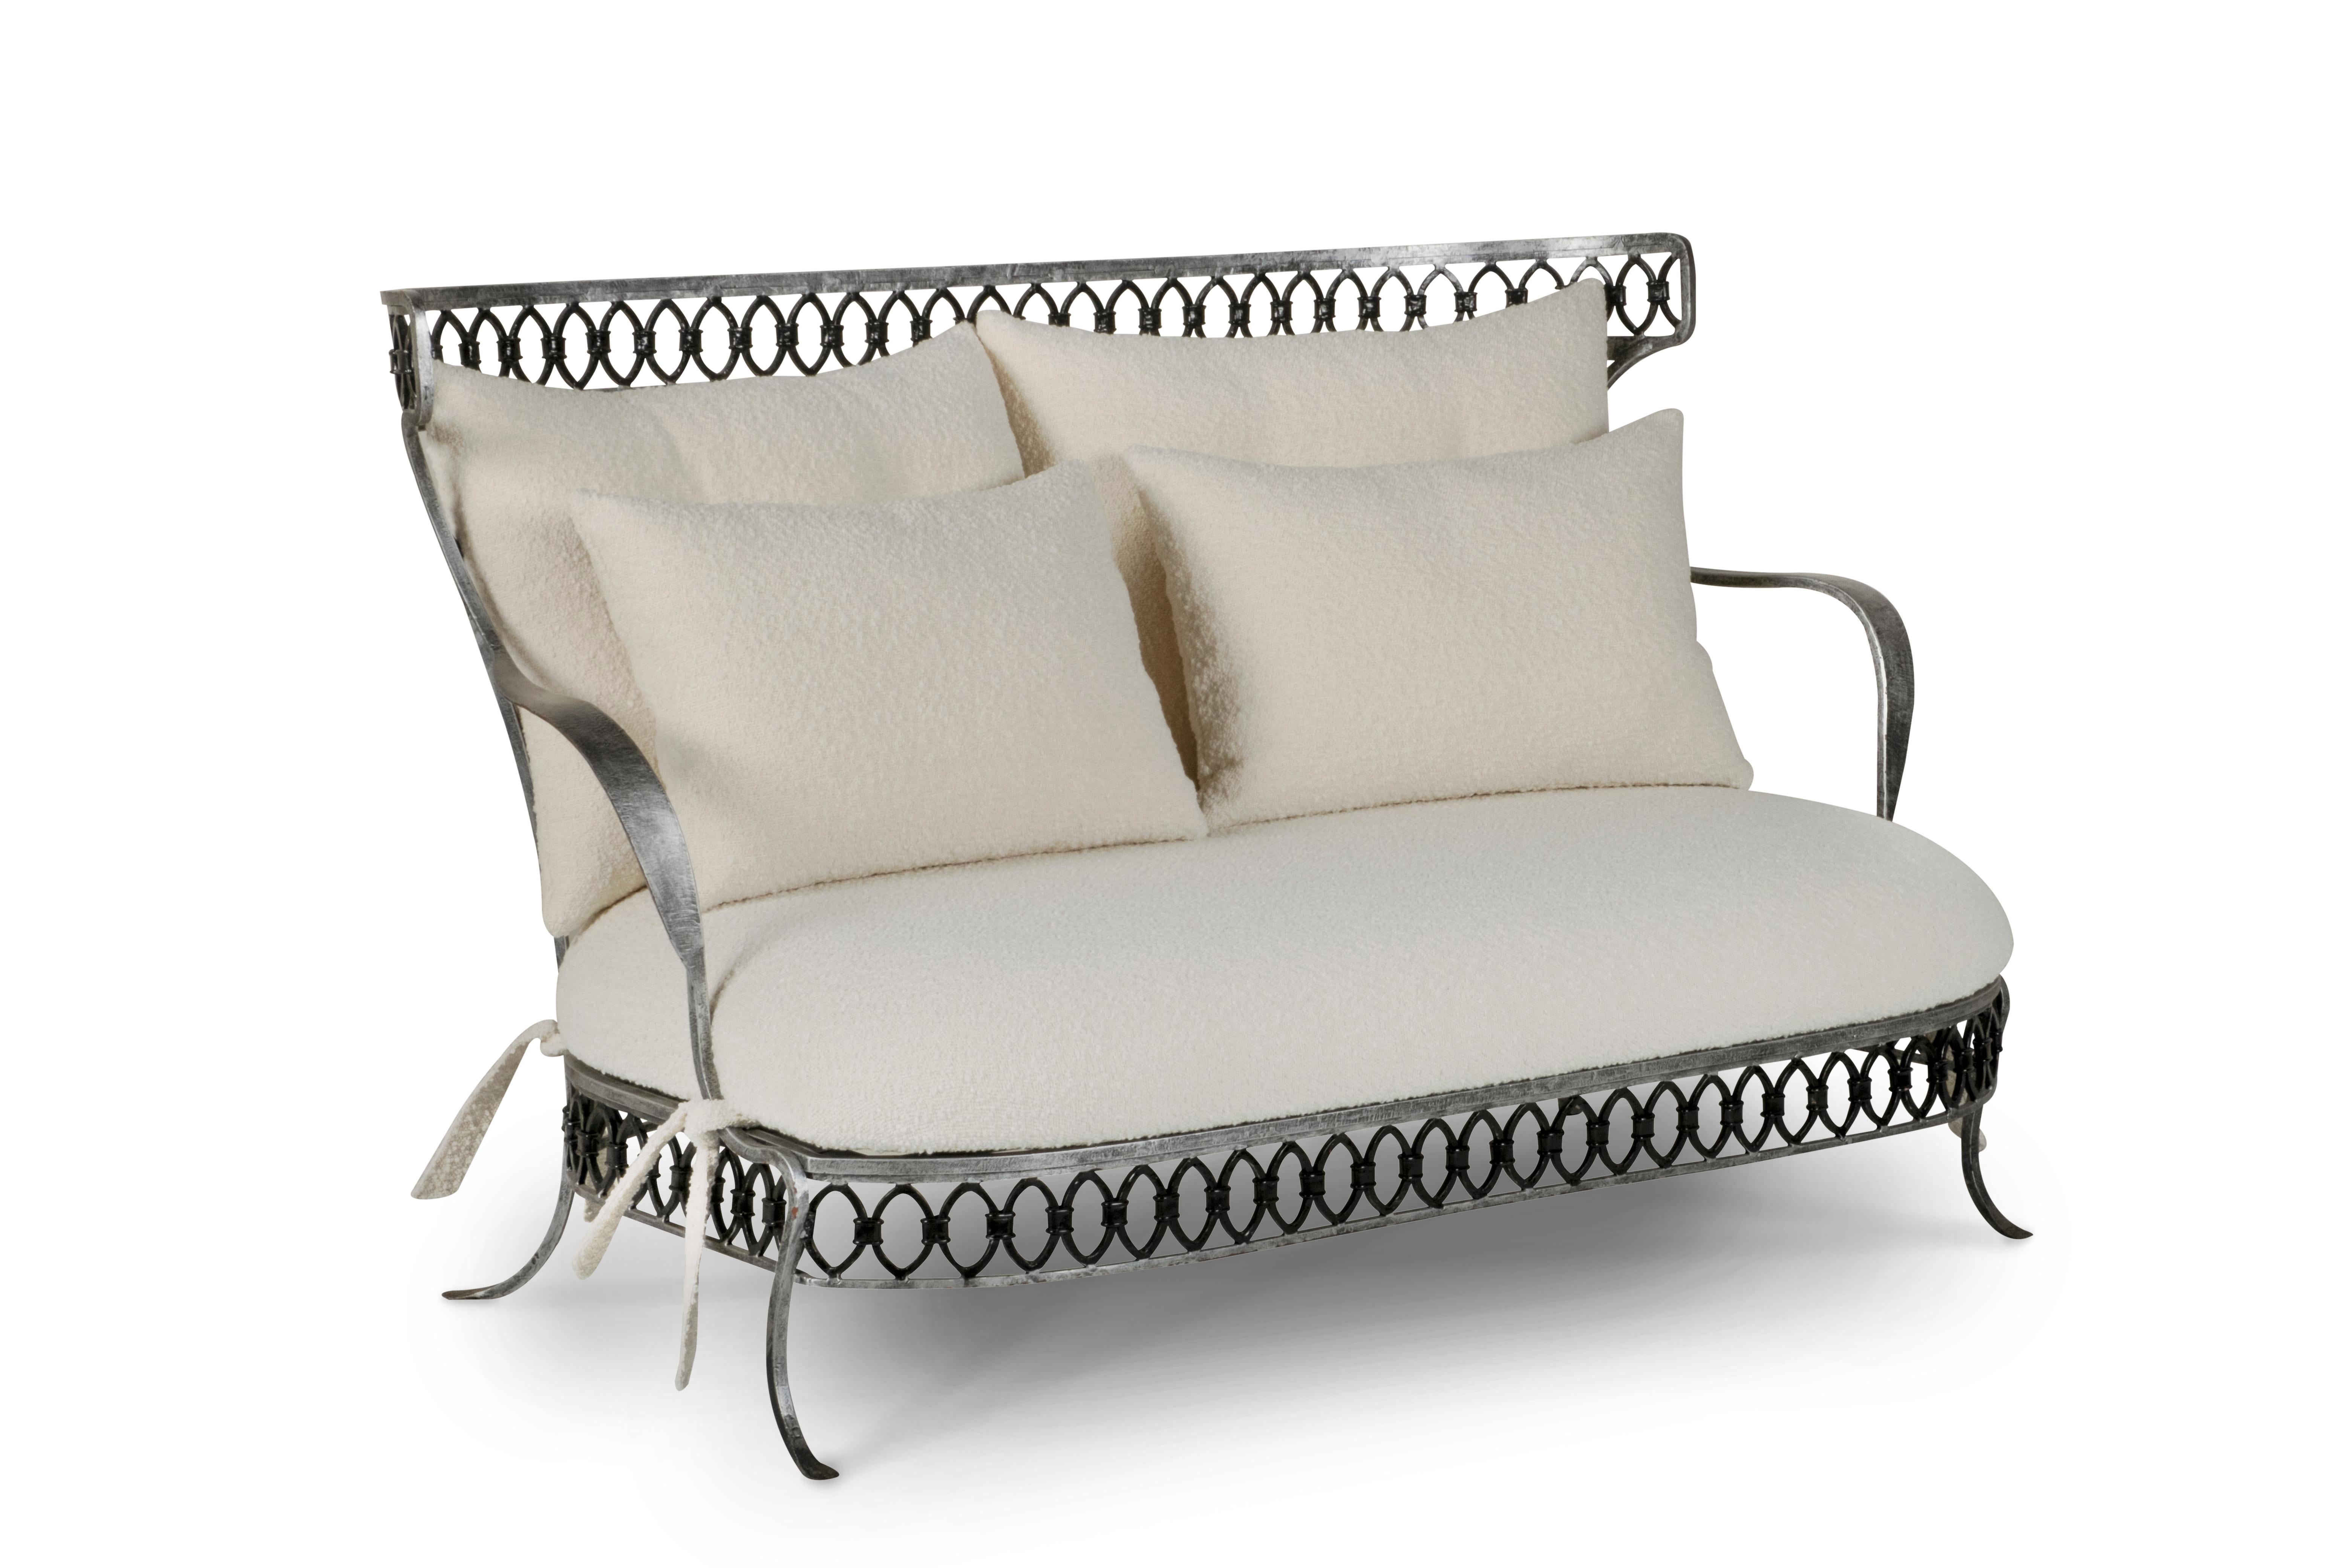 Aurora Sofa, Lusitanus Home Collection, handgefertigt in Europa.

Dieses 2-Sitzer-Sofa ist ein italienisches Möbelstück in limitierter Auflage von nur einem Exemplar und stammt aus asiatischer Handwerkskunst mit Geschichte. Der weiße Bouclé-Stoff